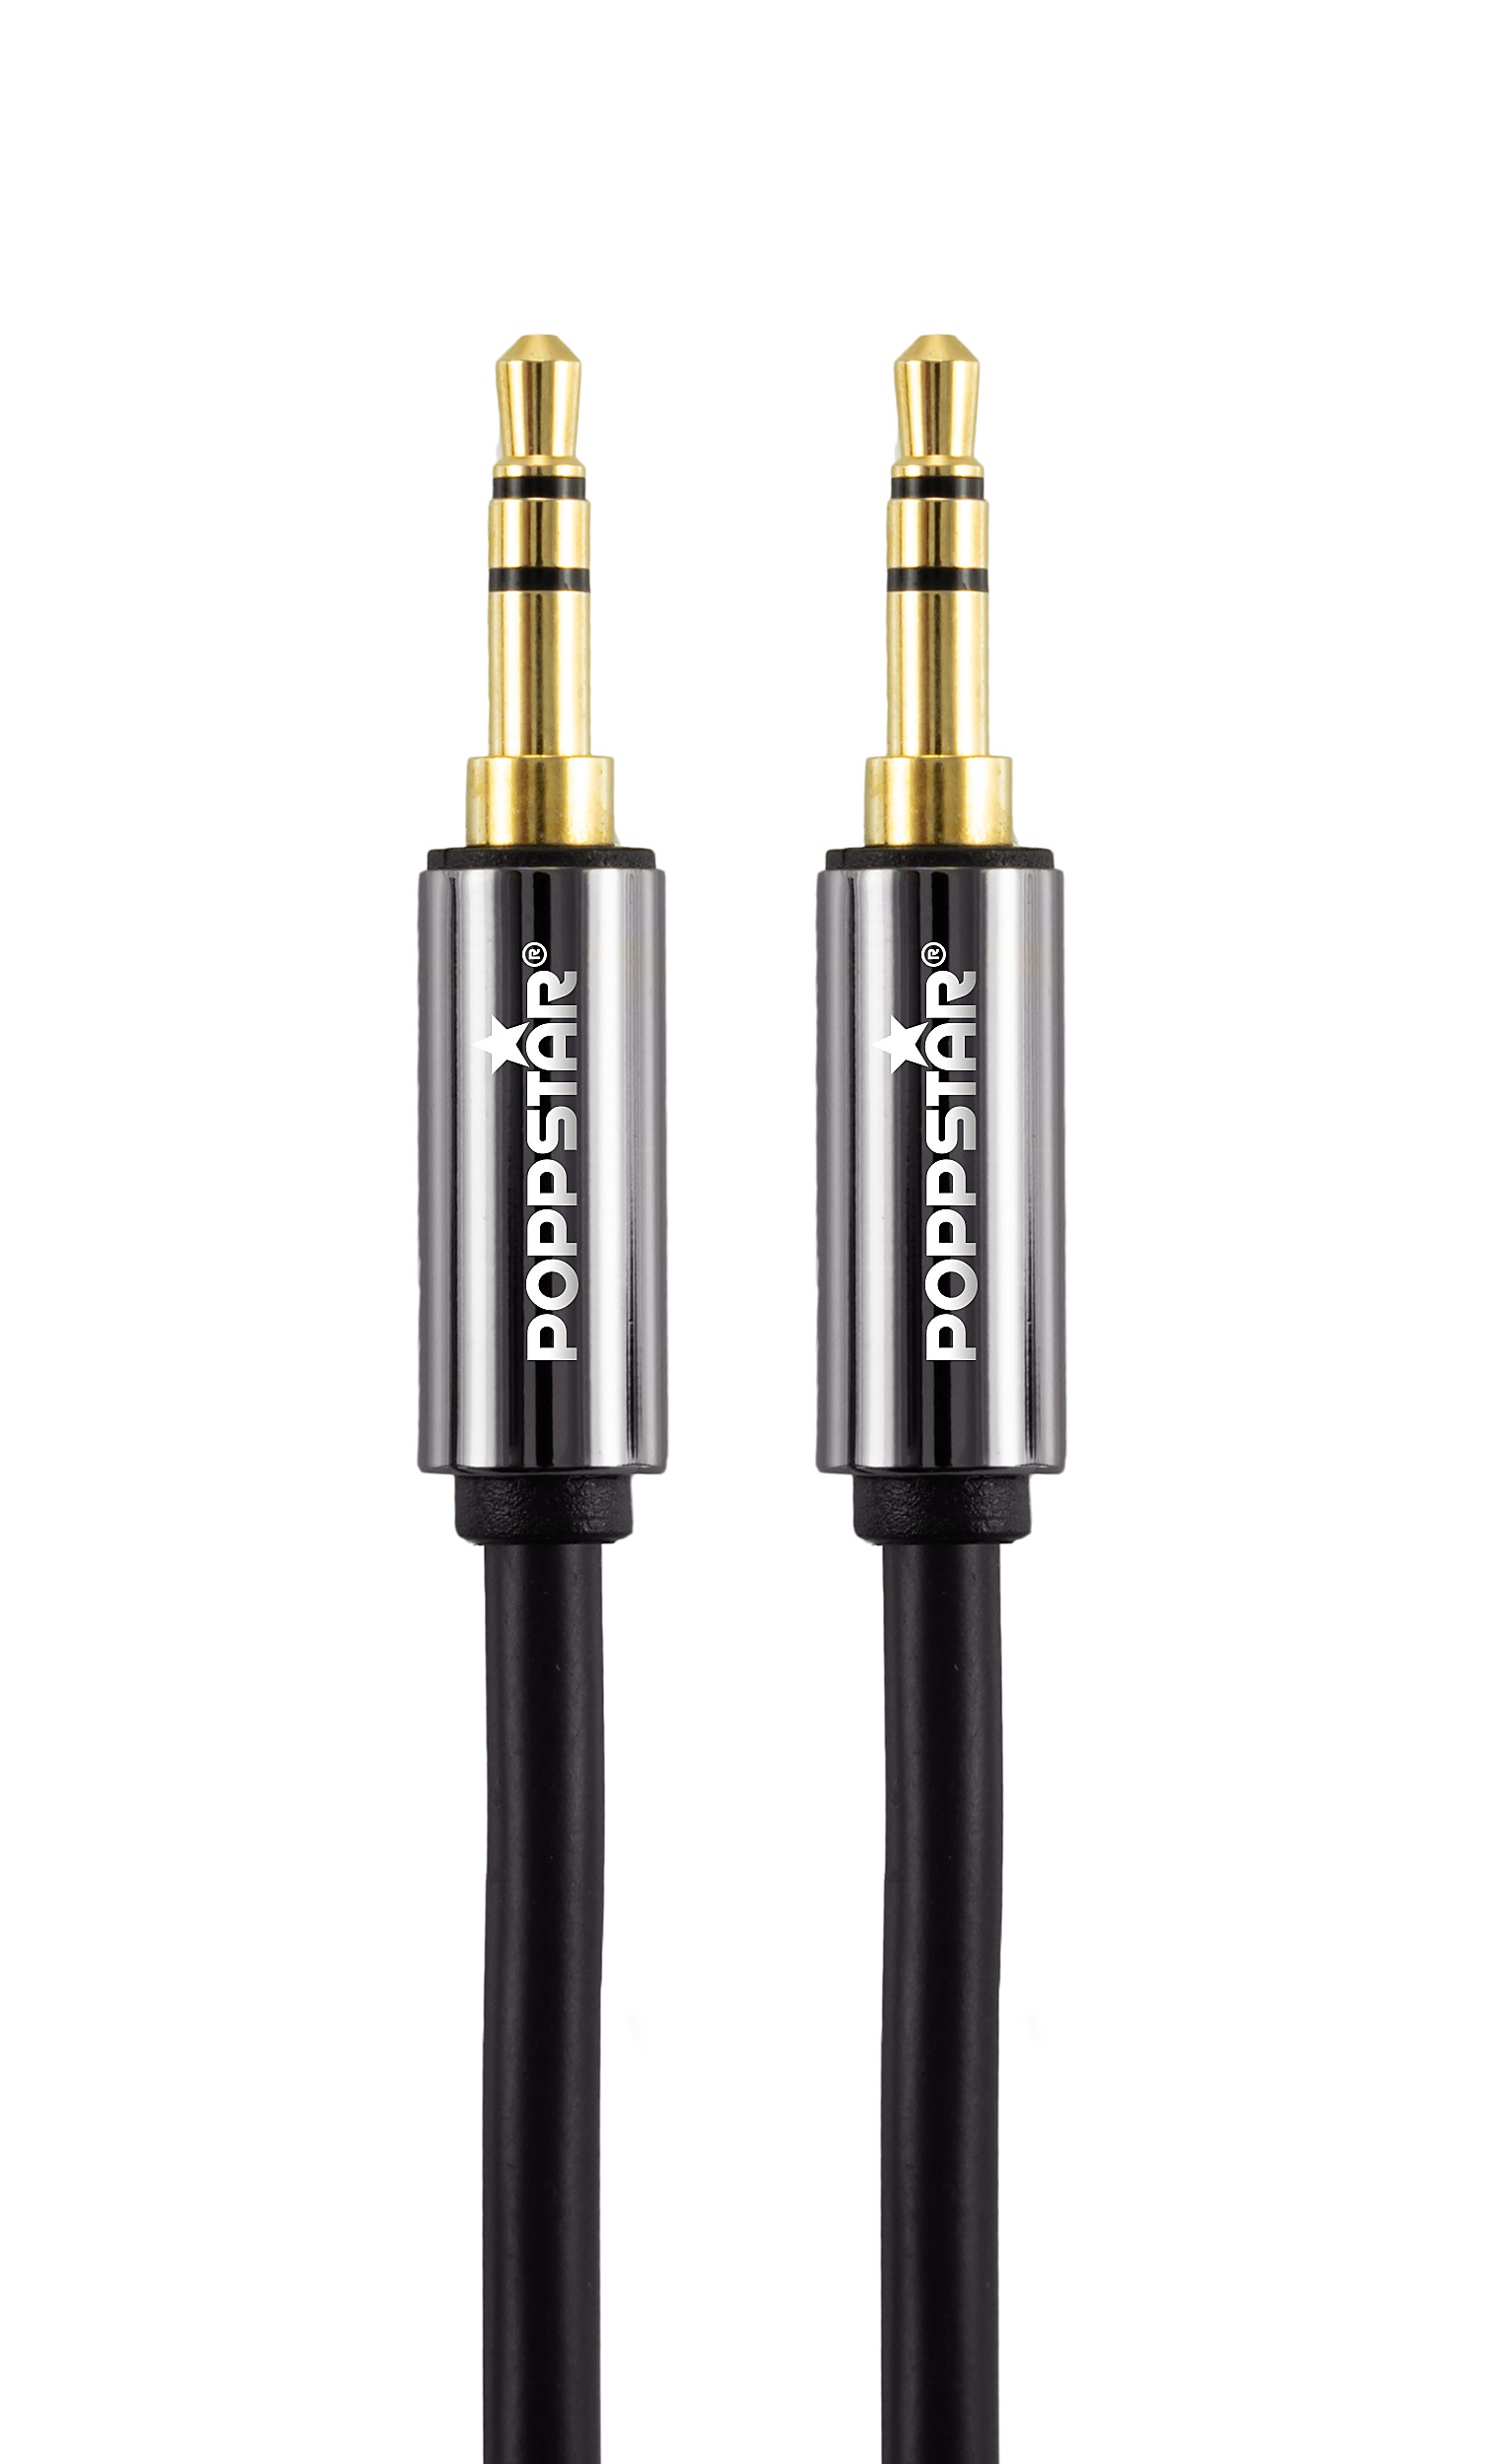 HQ Audio-Klinkenkabel 5 m mit Klinkenstecker 3,5 mm vergoldet